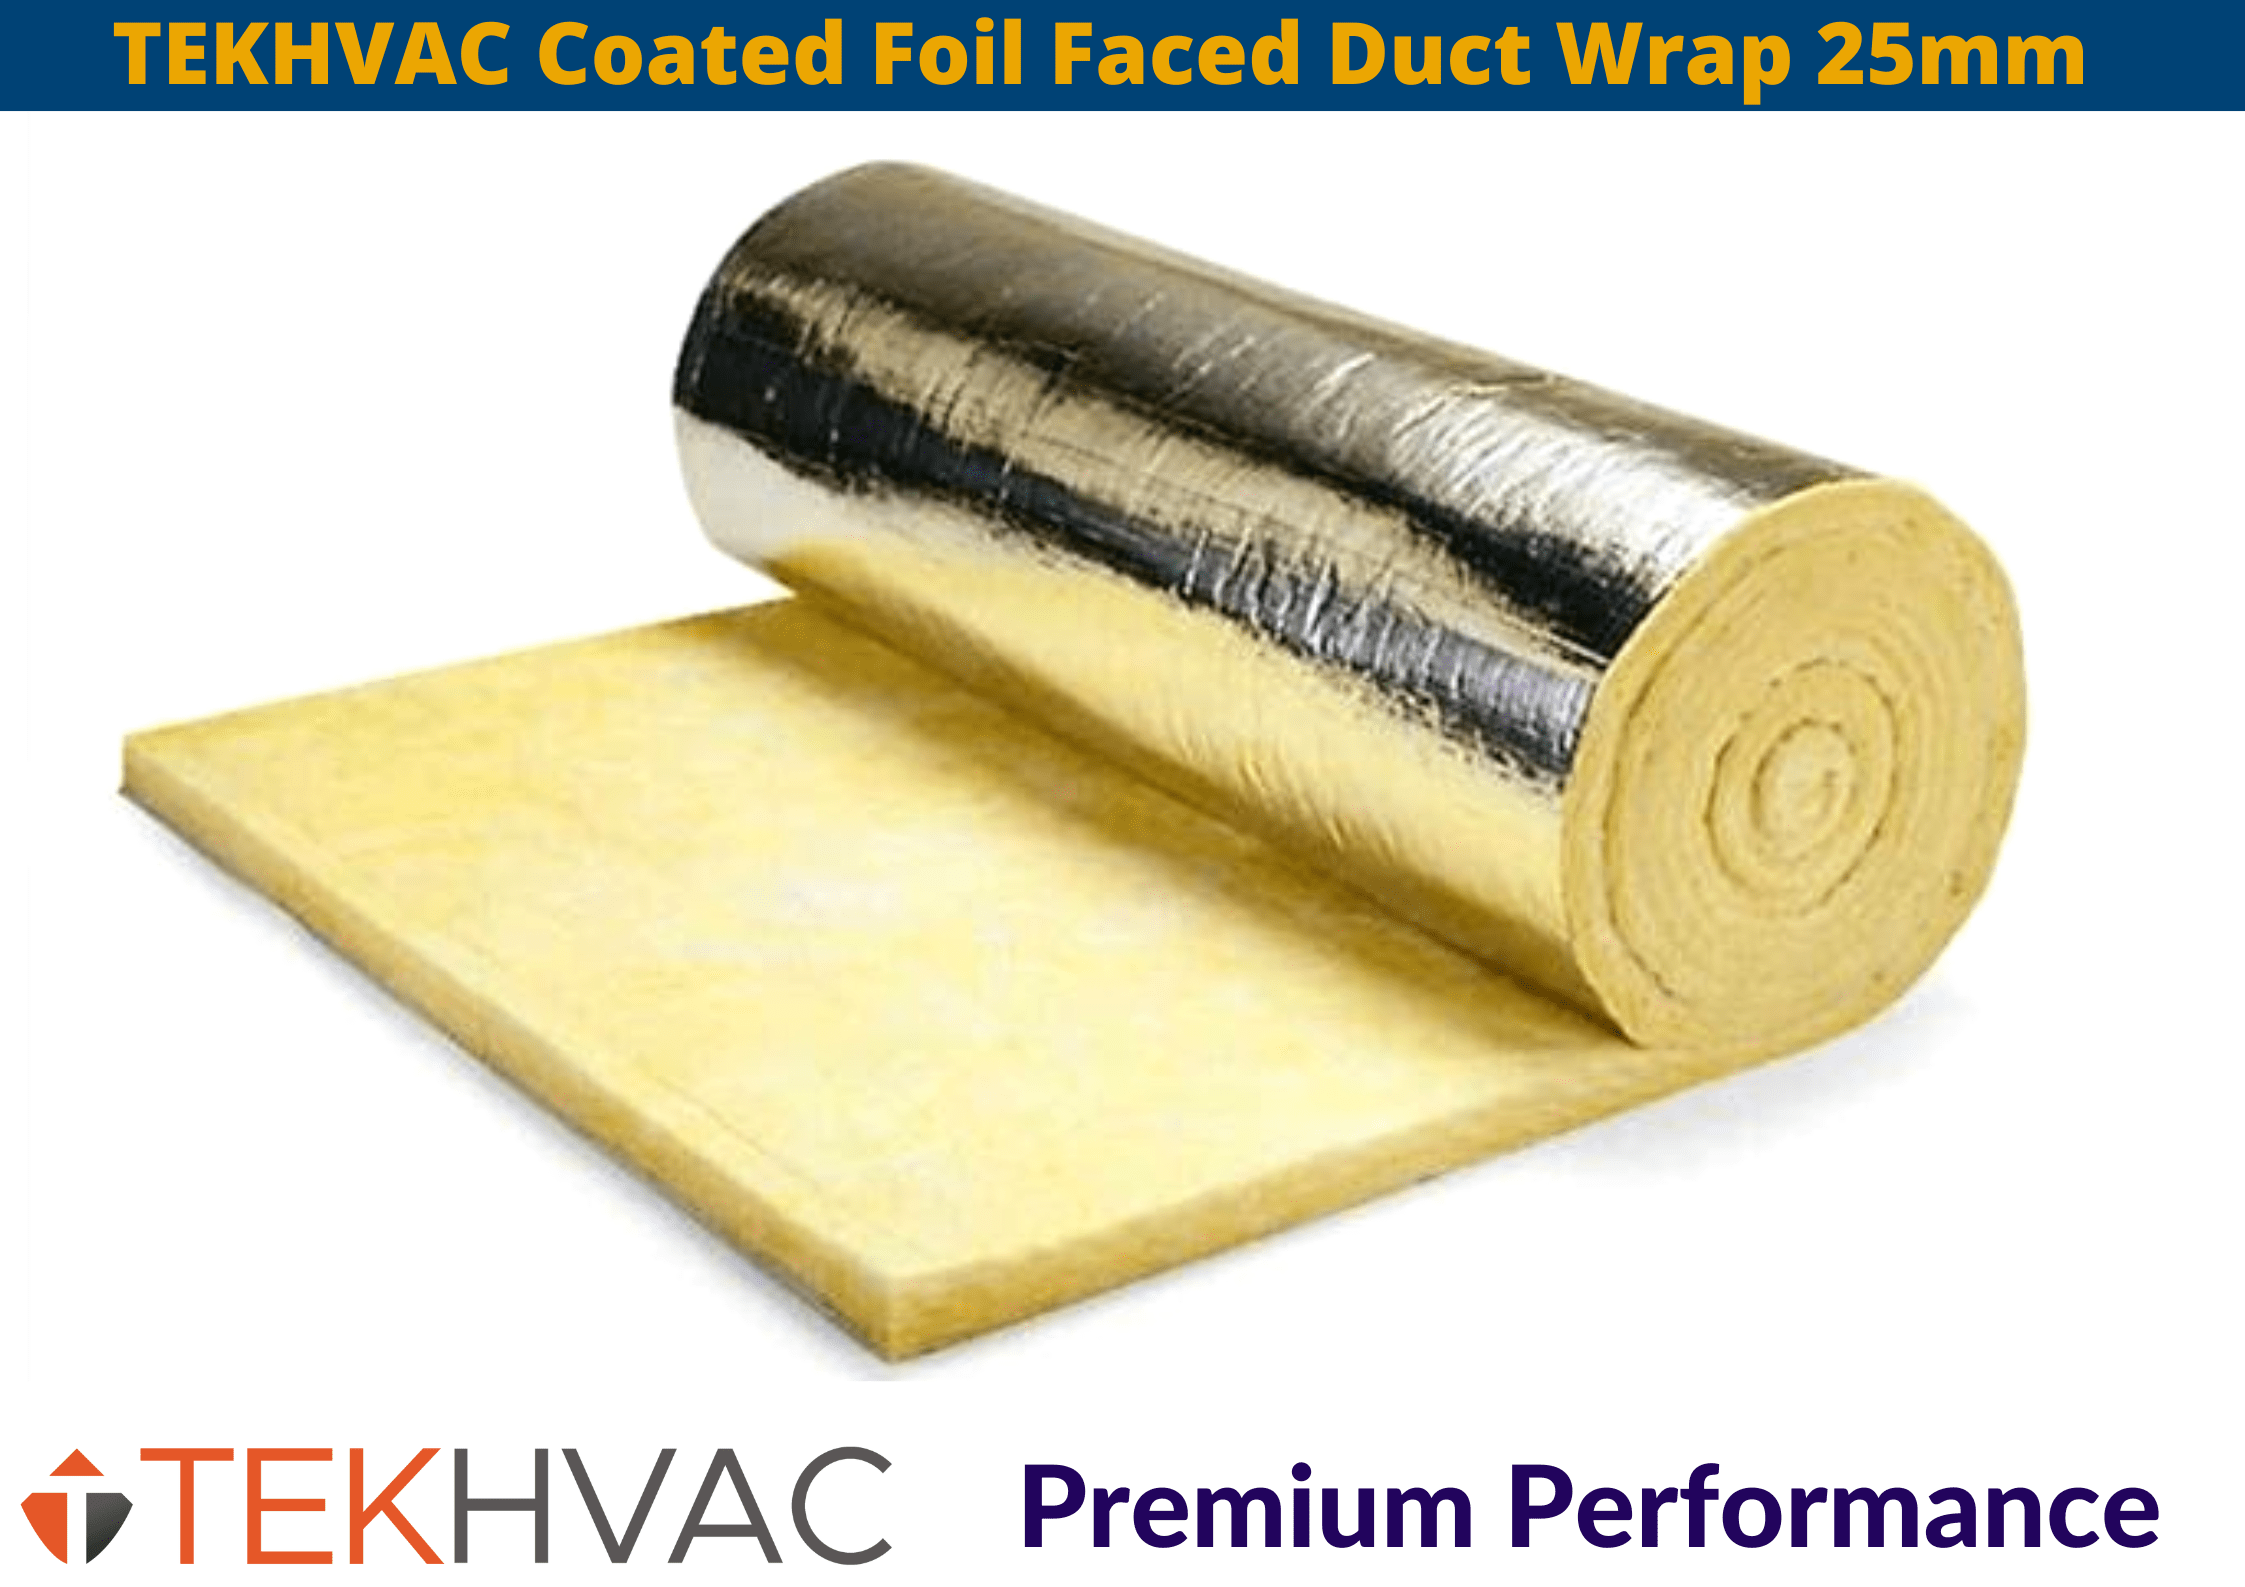 TekHVAC TEKHVAC Foil Faced Duct Wrap | 1200 x 25mm IUK01580 TEKHVAC Foil Faced Duct Wrap 1200 x 25mm | insulationuk.co.uk